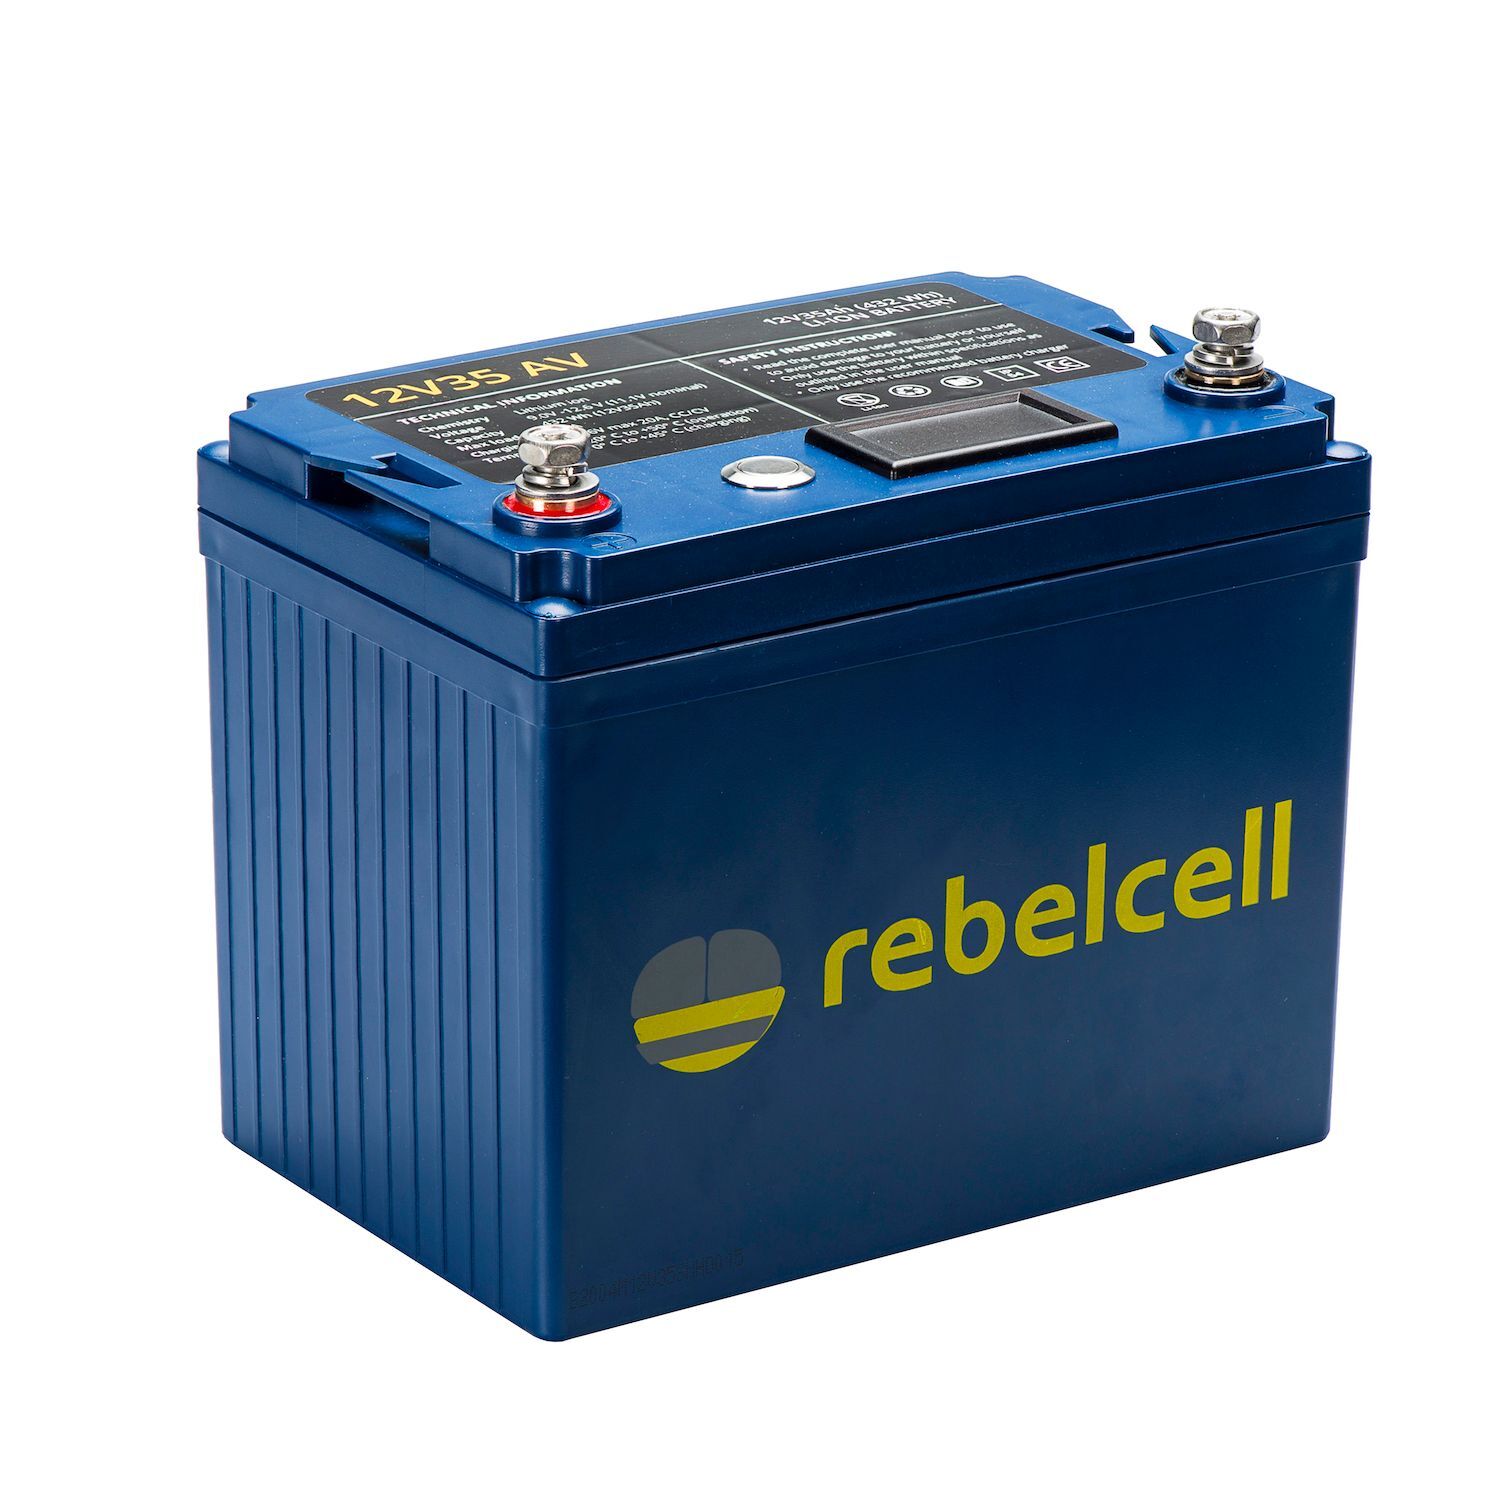 Rebelcell Li-Ion 12V/35A akku jännite/varausnäytöllä